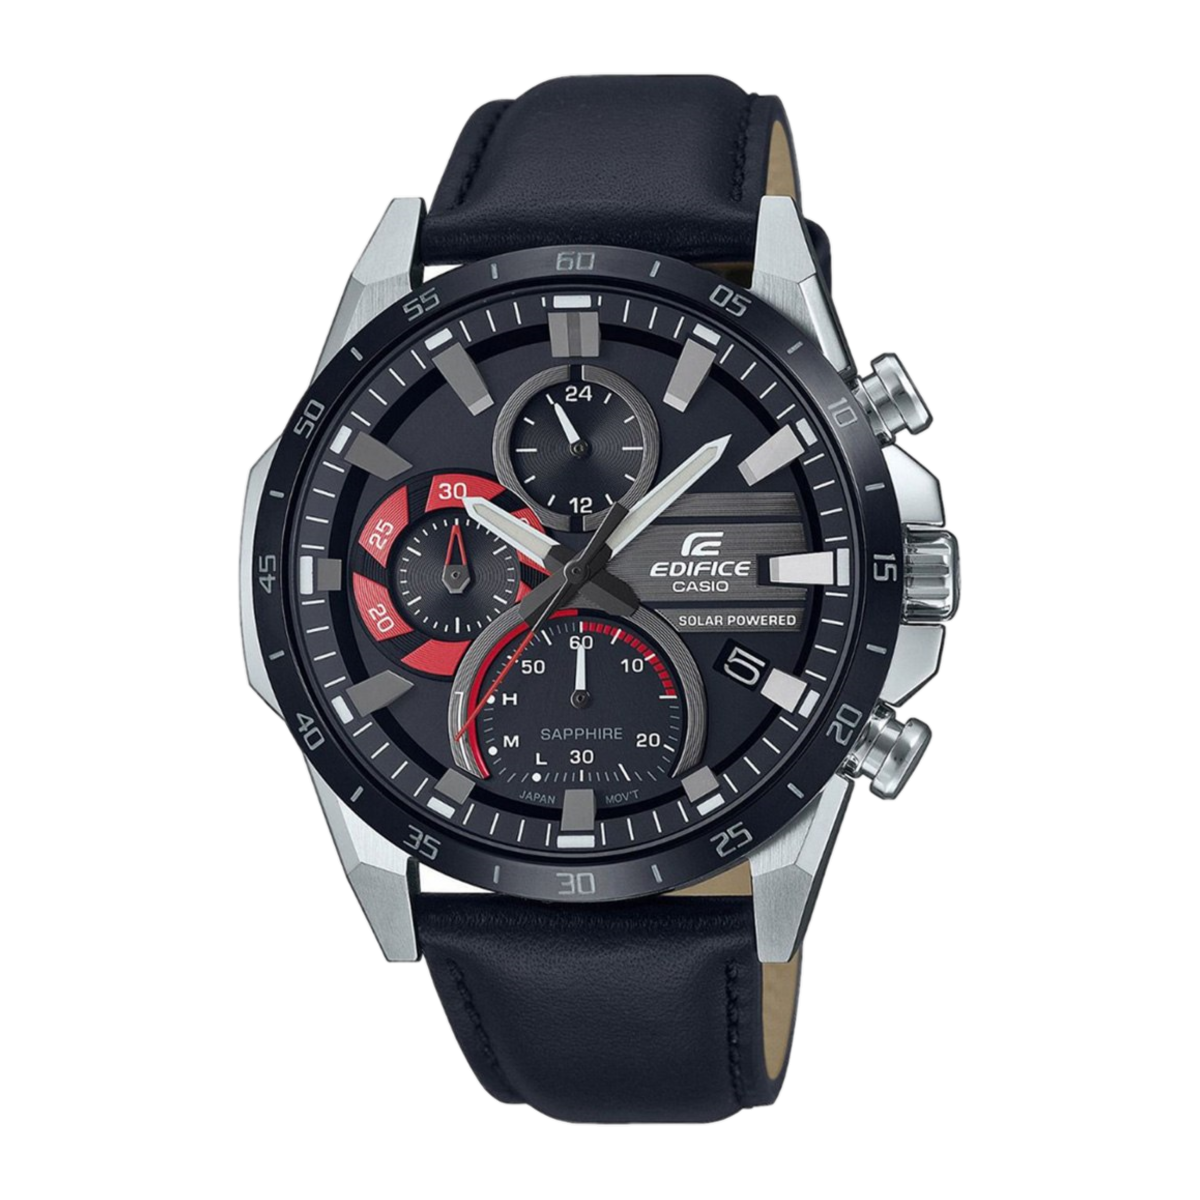 Casio Edifice EFS-S620BL-1AVUEFСерията Casio Edifice представлява линия от модерни мъжки часовници, произведени от японската компания Casio. Тези часовници са известни със своята смела и спортна визия, както и с високата им функционалност и качество. Ето някои характеристики и особености на часовниците от серията Casio Edifice